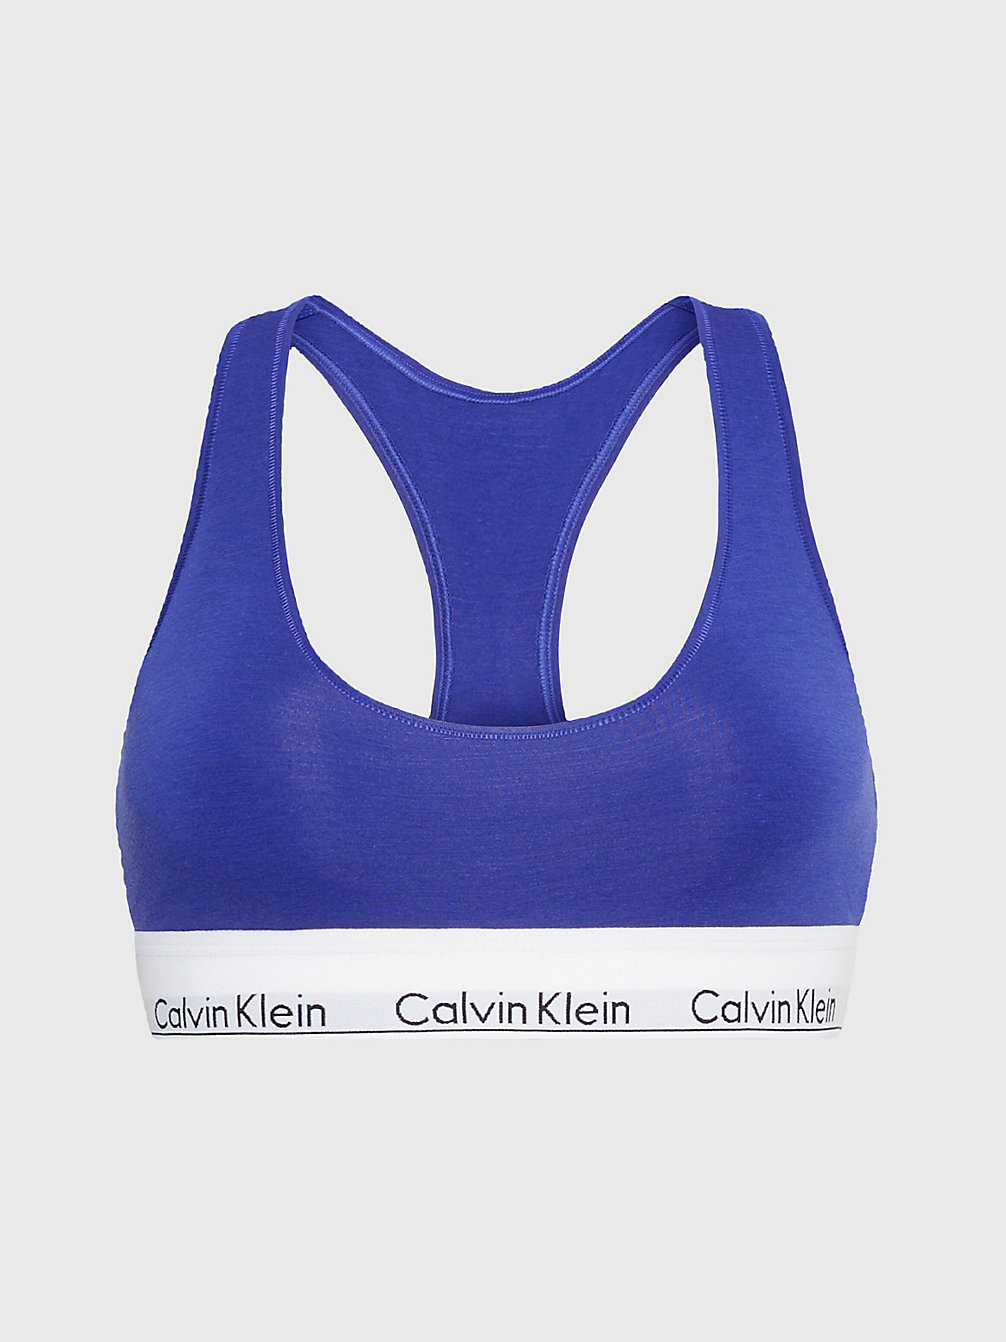 Brassière - Modern Cotton > SPECTRUM BLUE > undefined donna > Calvin Klein